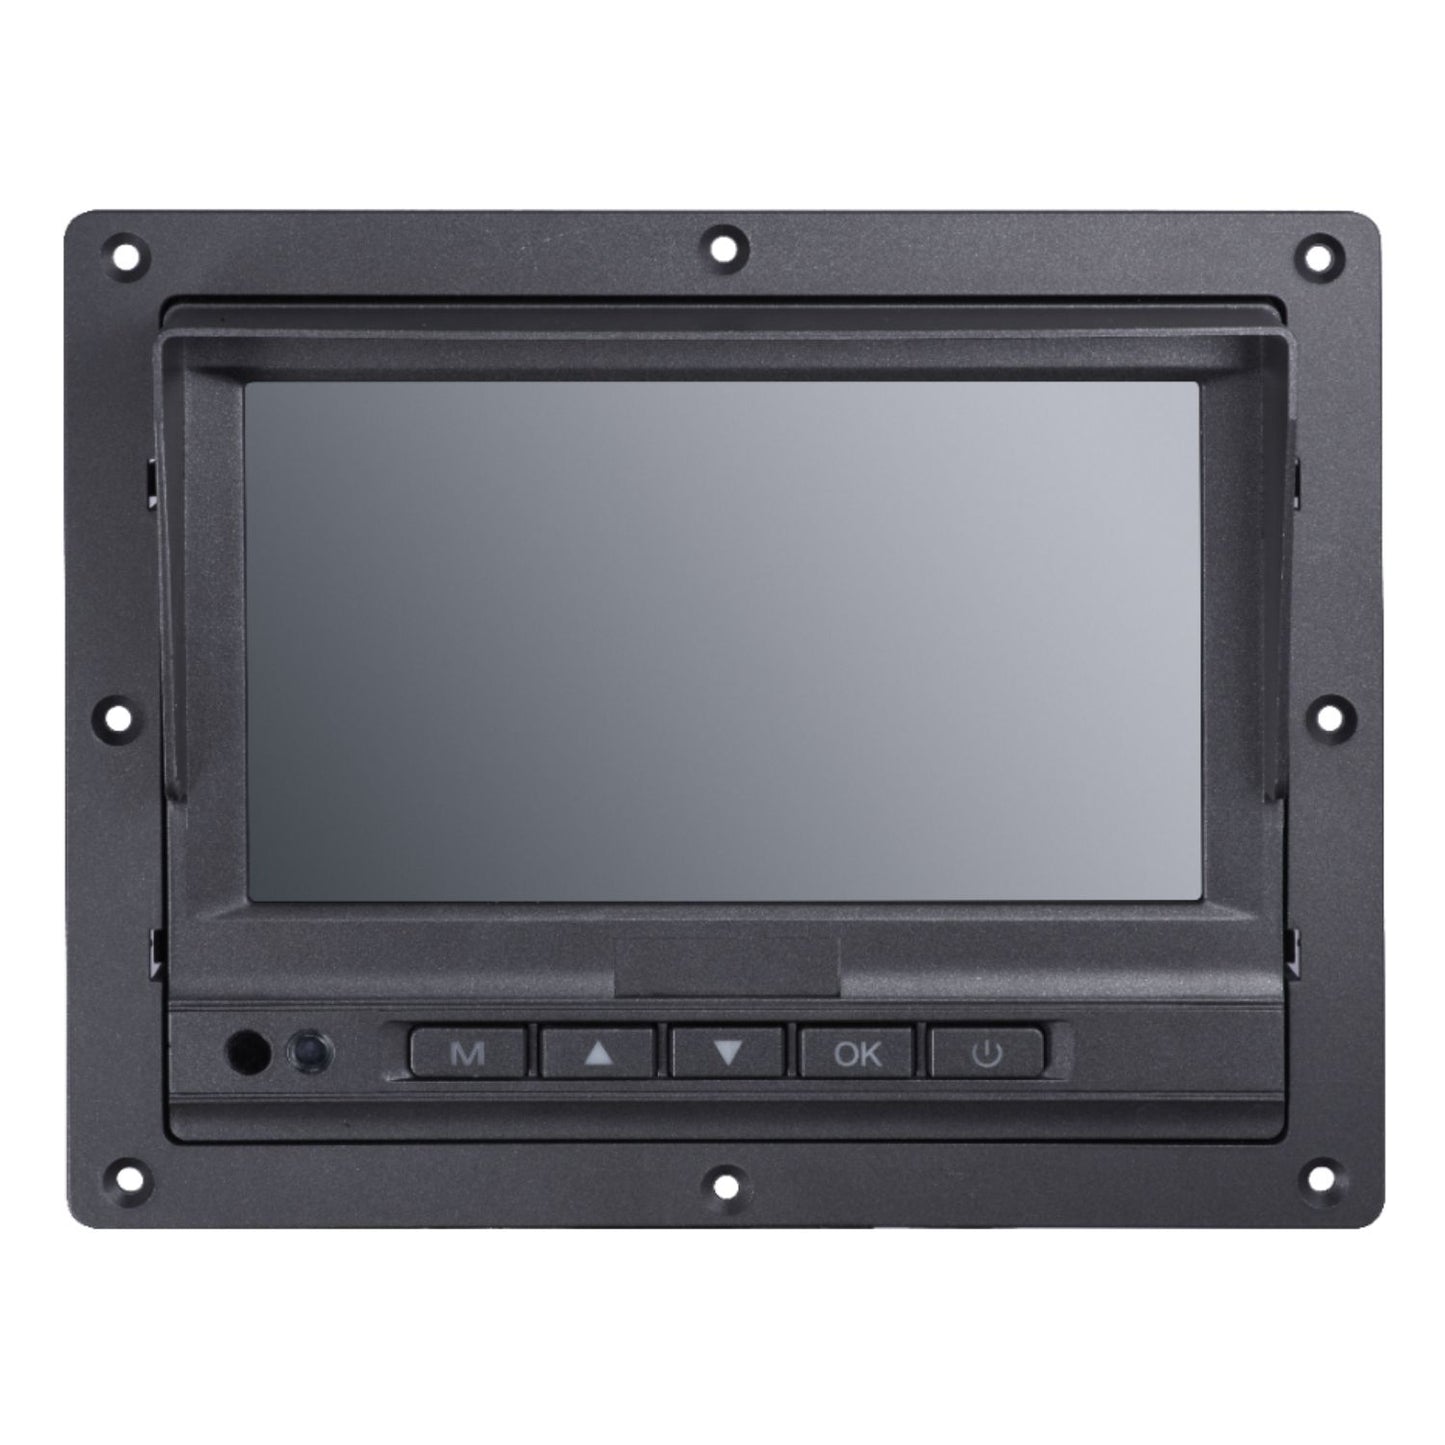 DS-MP1302 - Moniteur LCD à écran tactile TFT 7", montage intégré/sur support